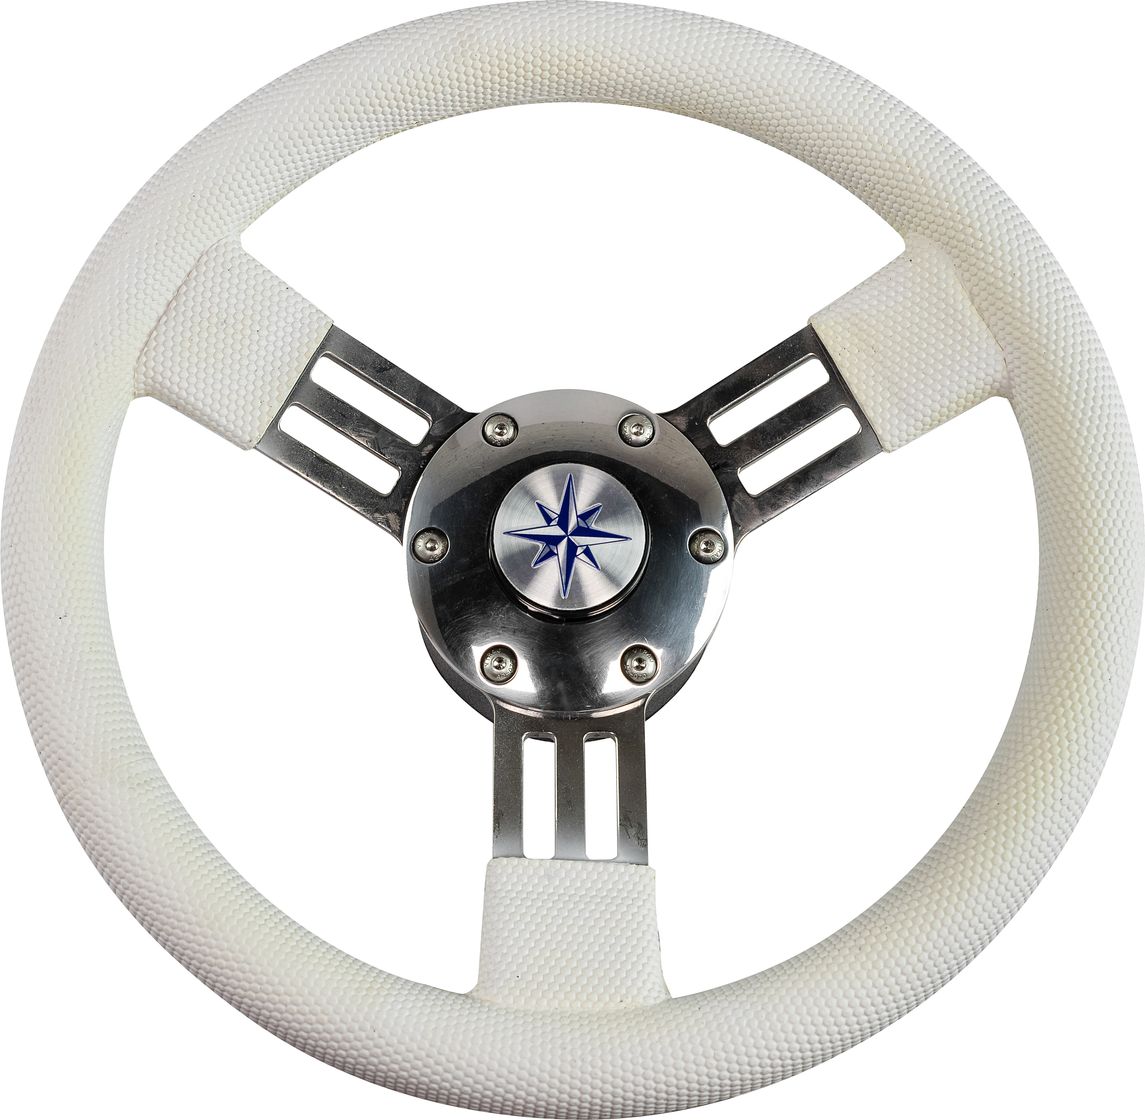 Рулевое колесо PEGASO обод белый, спицы серебряные д. 300 мм VN13327-08 рулевое колесо tavolara c s tavolara c s